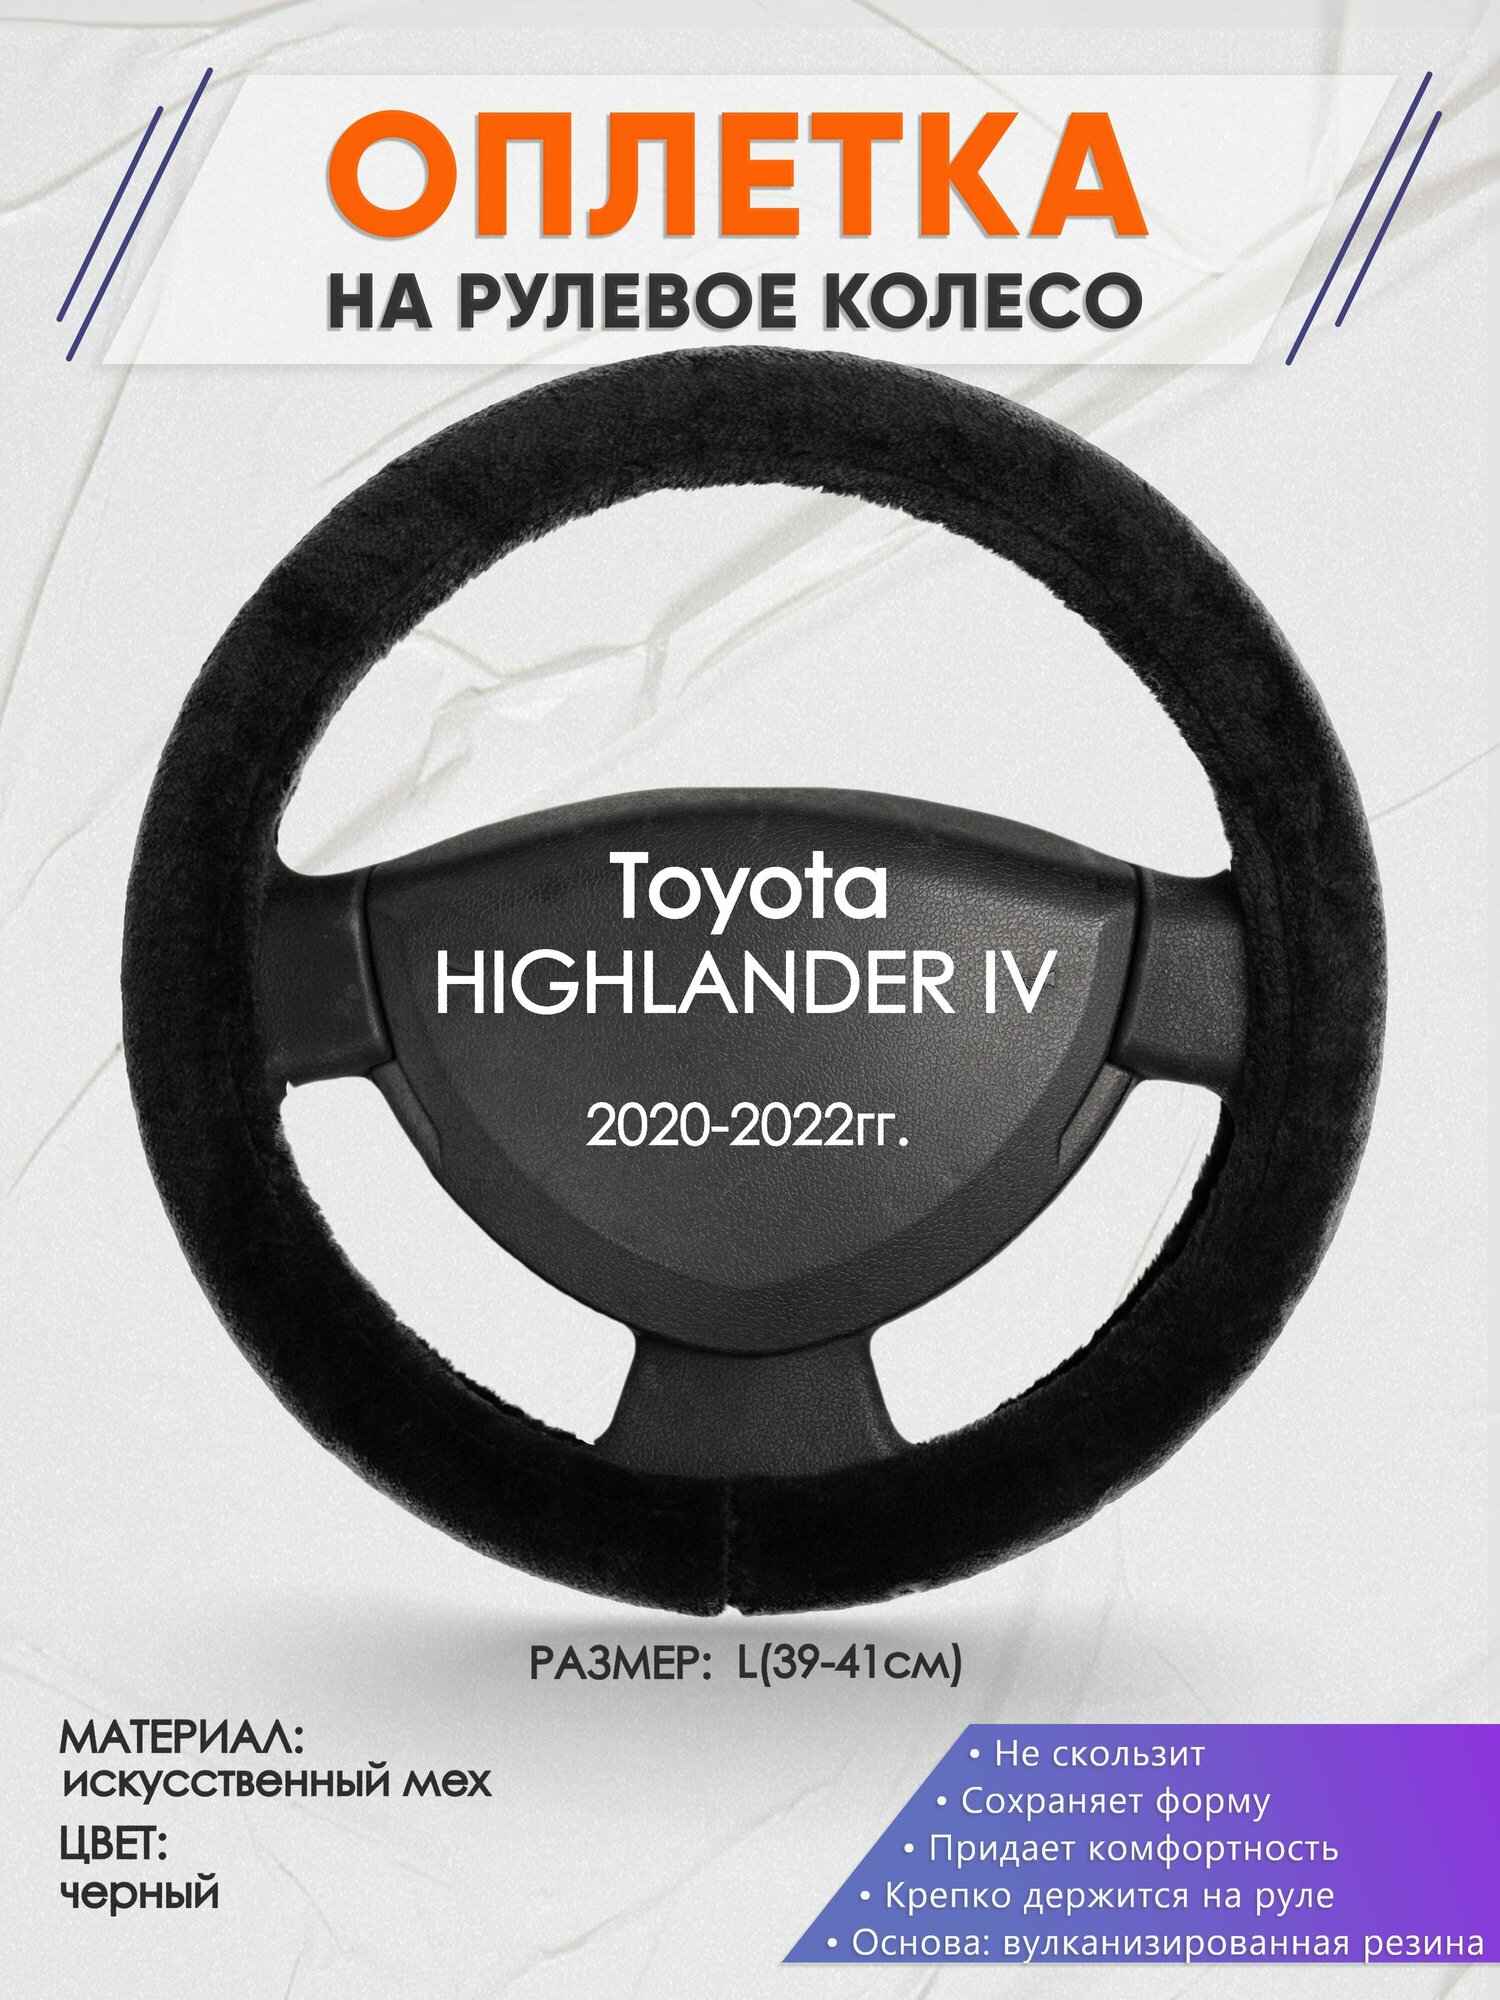 Оплетка на руль для Toyota HIGHLANDER 4(Тойота Хайлендер 4) 2020-2022, L(39-41см), Искусственный мех 45